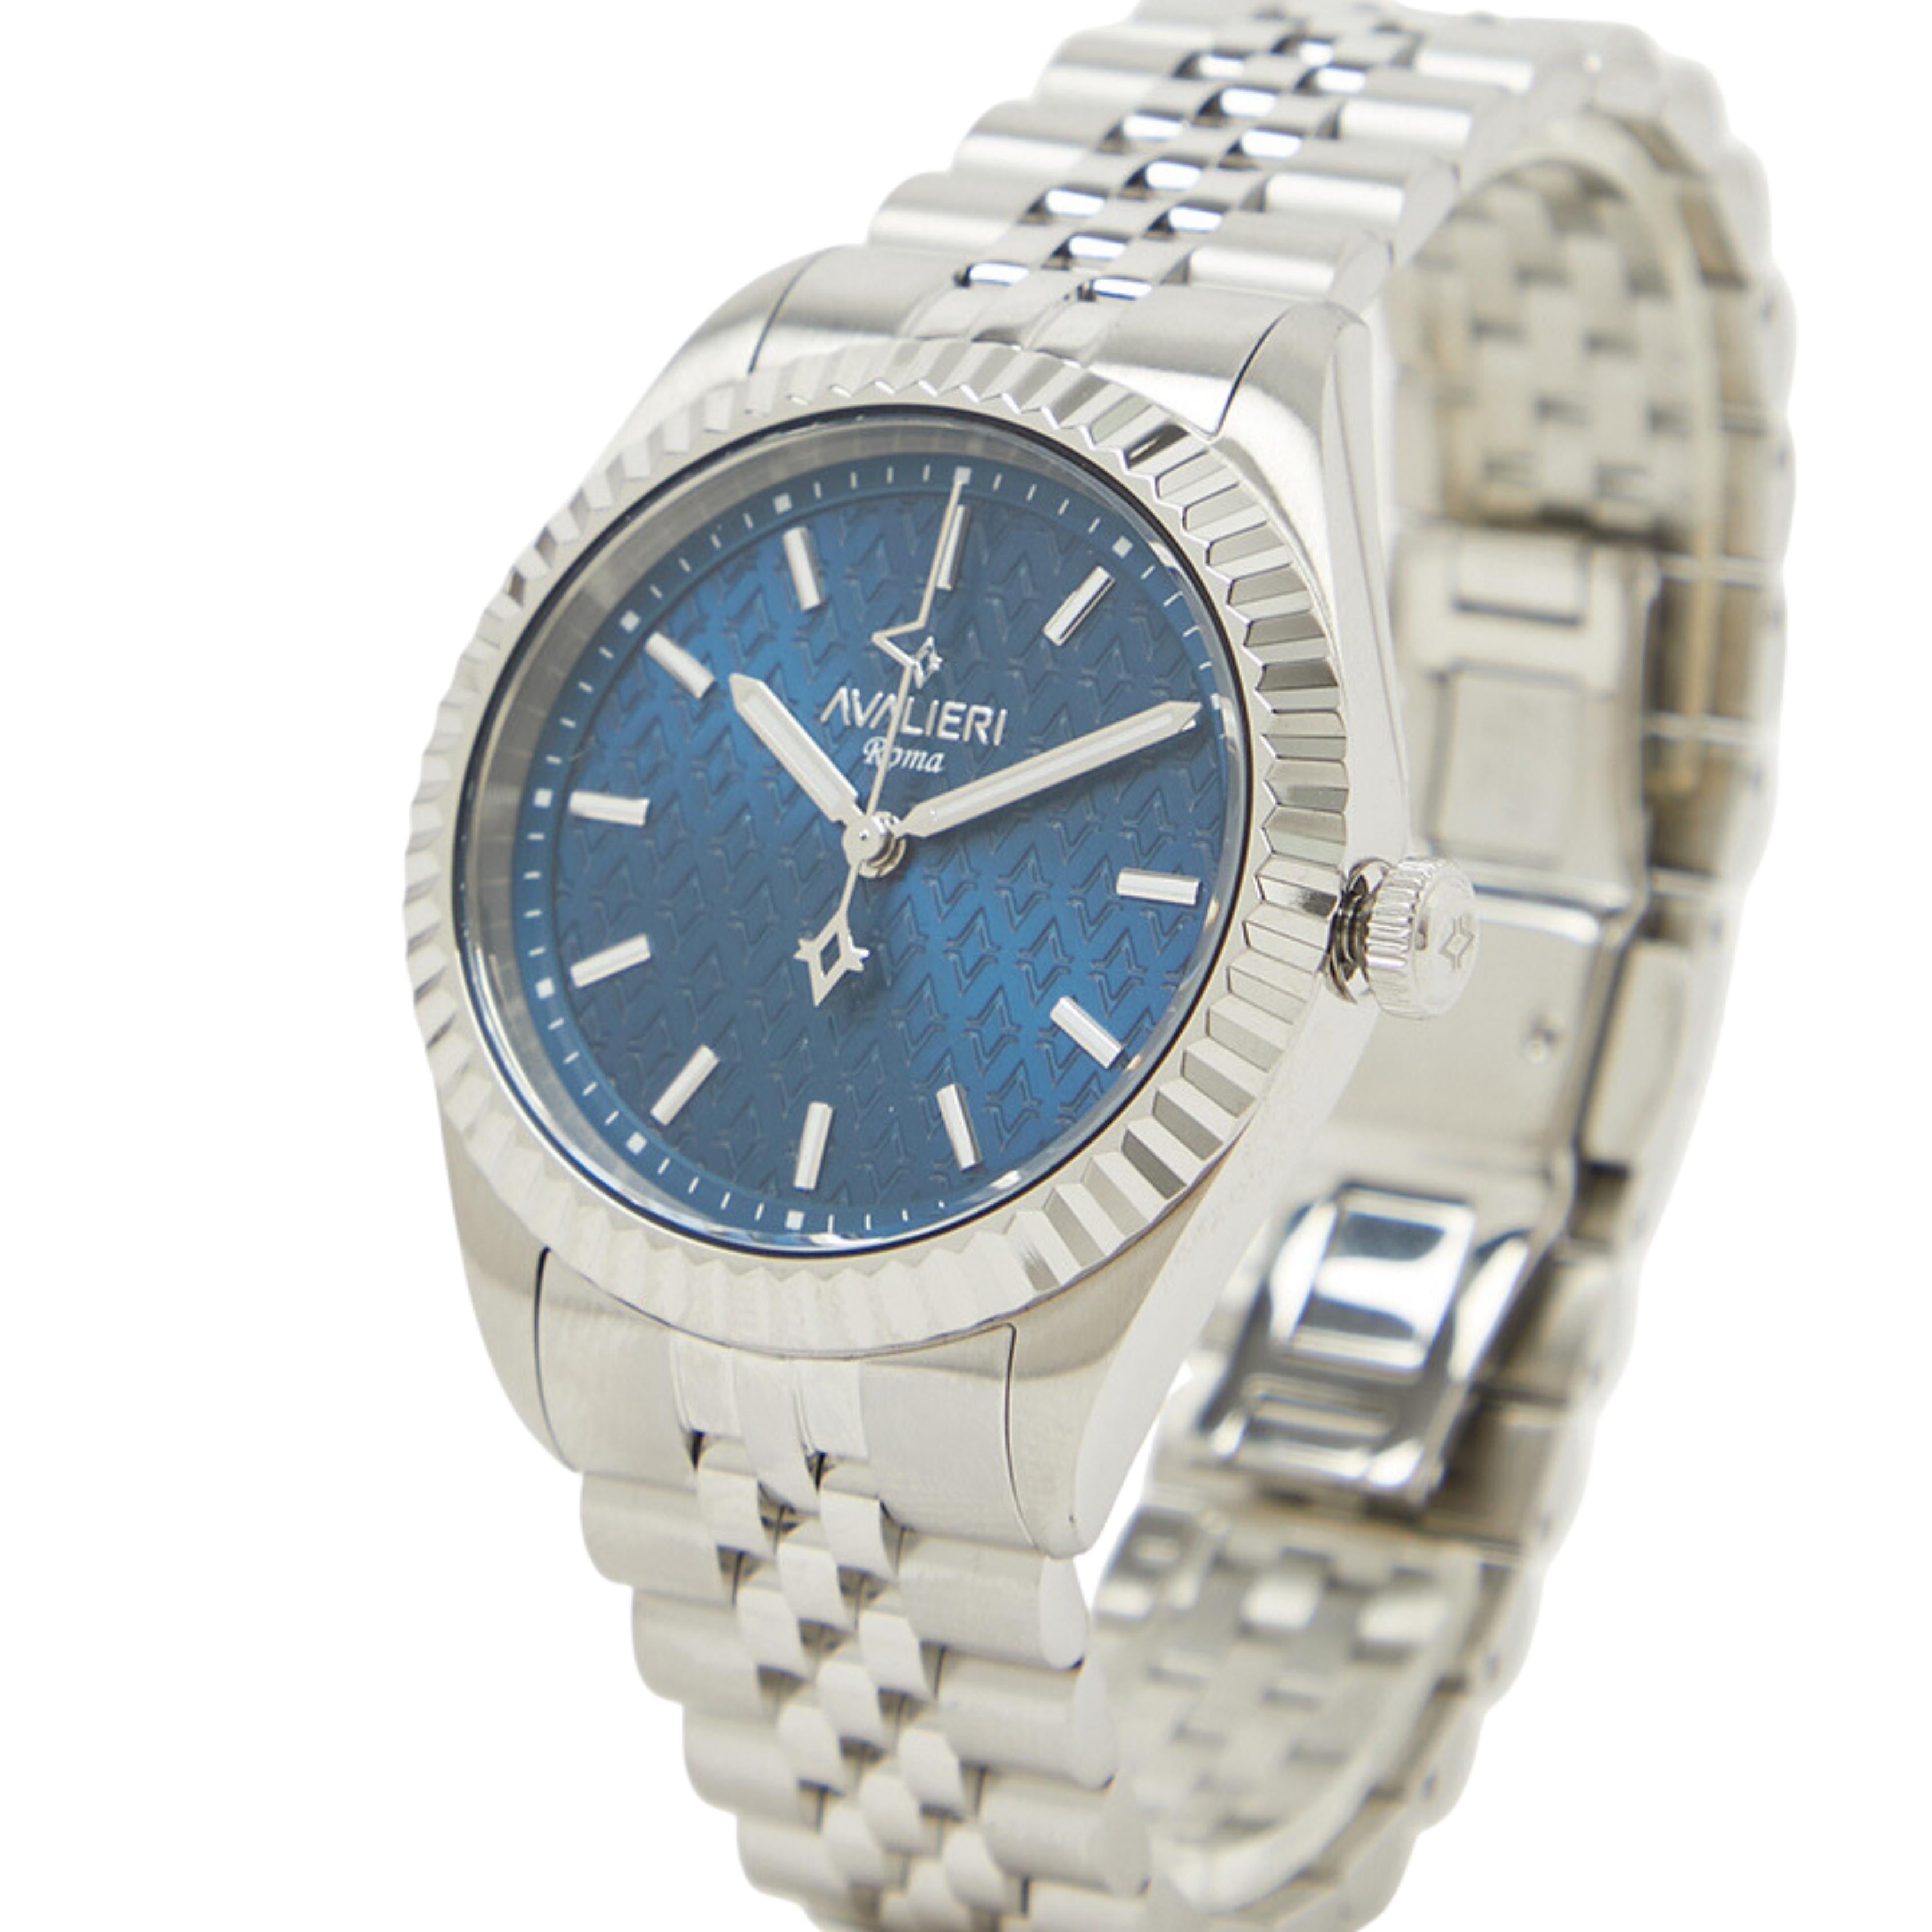 Avalieri Men's Quartz Blue Dial Watch - AV-2599B